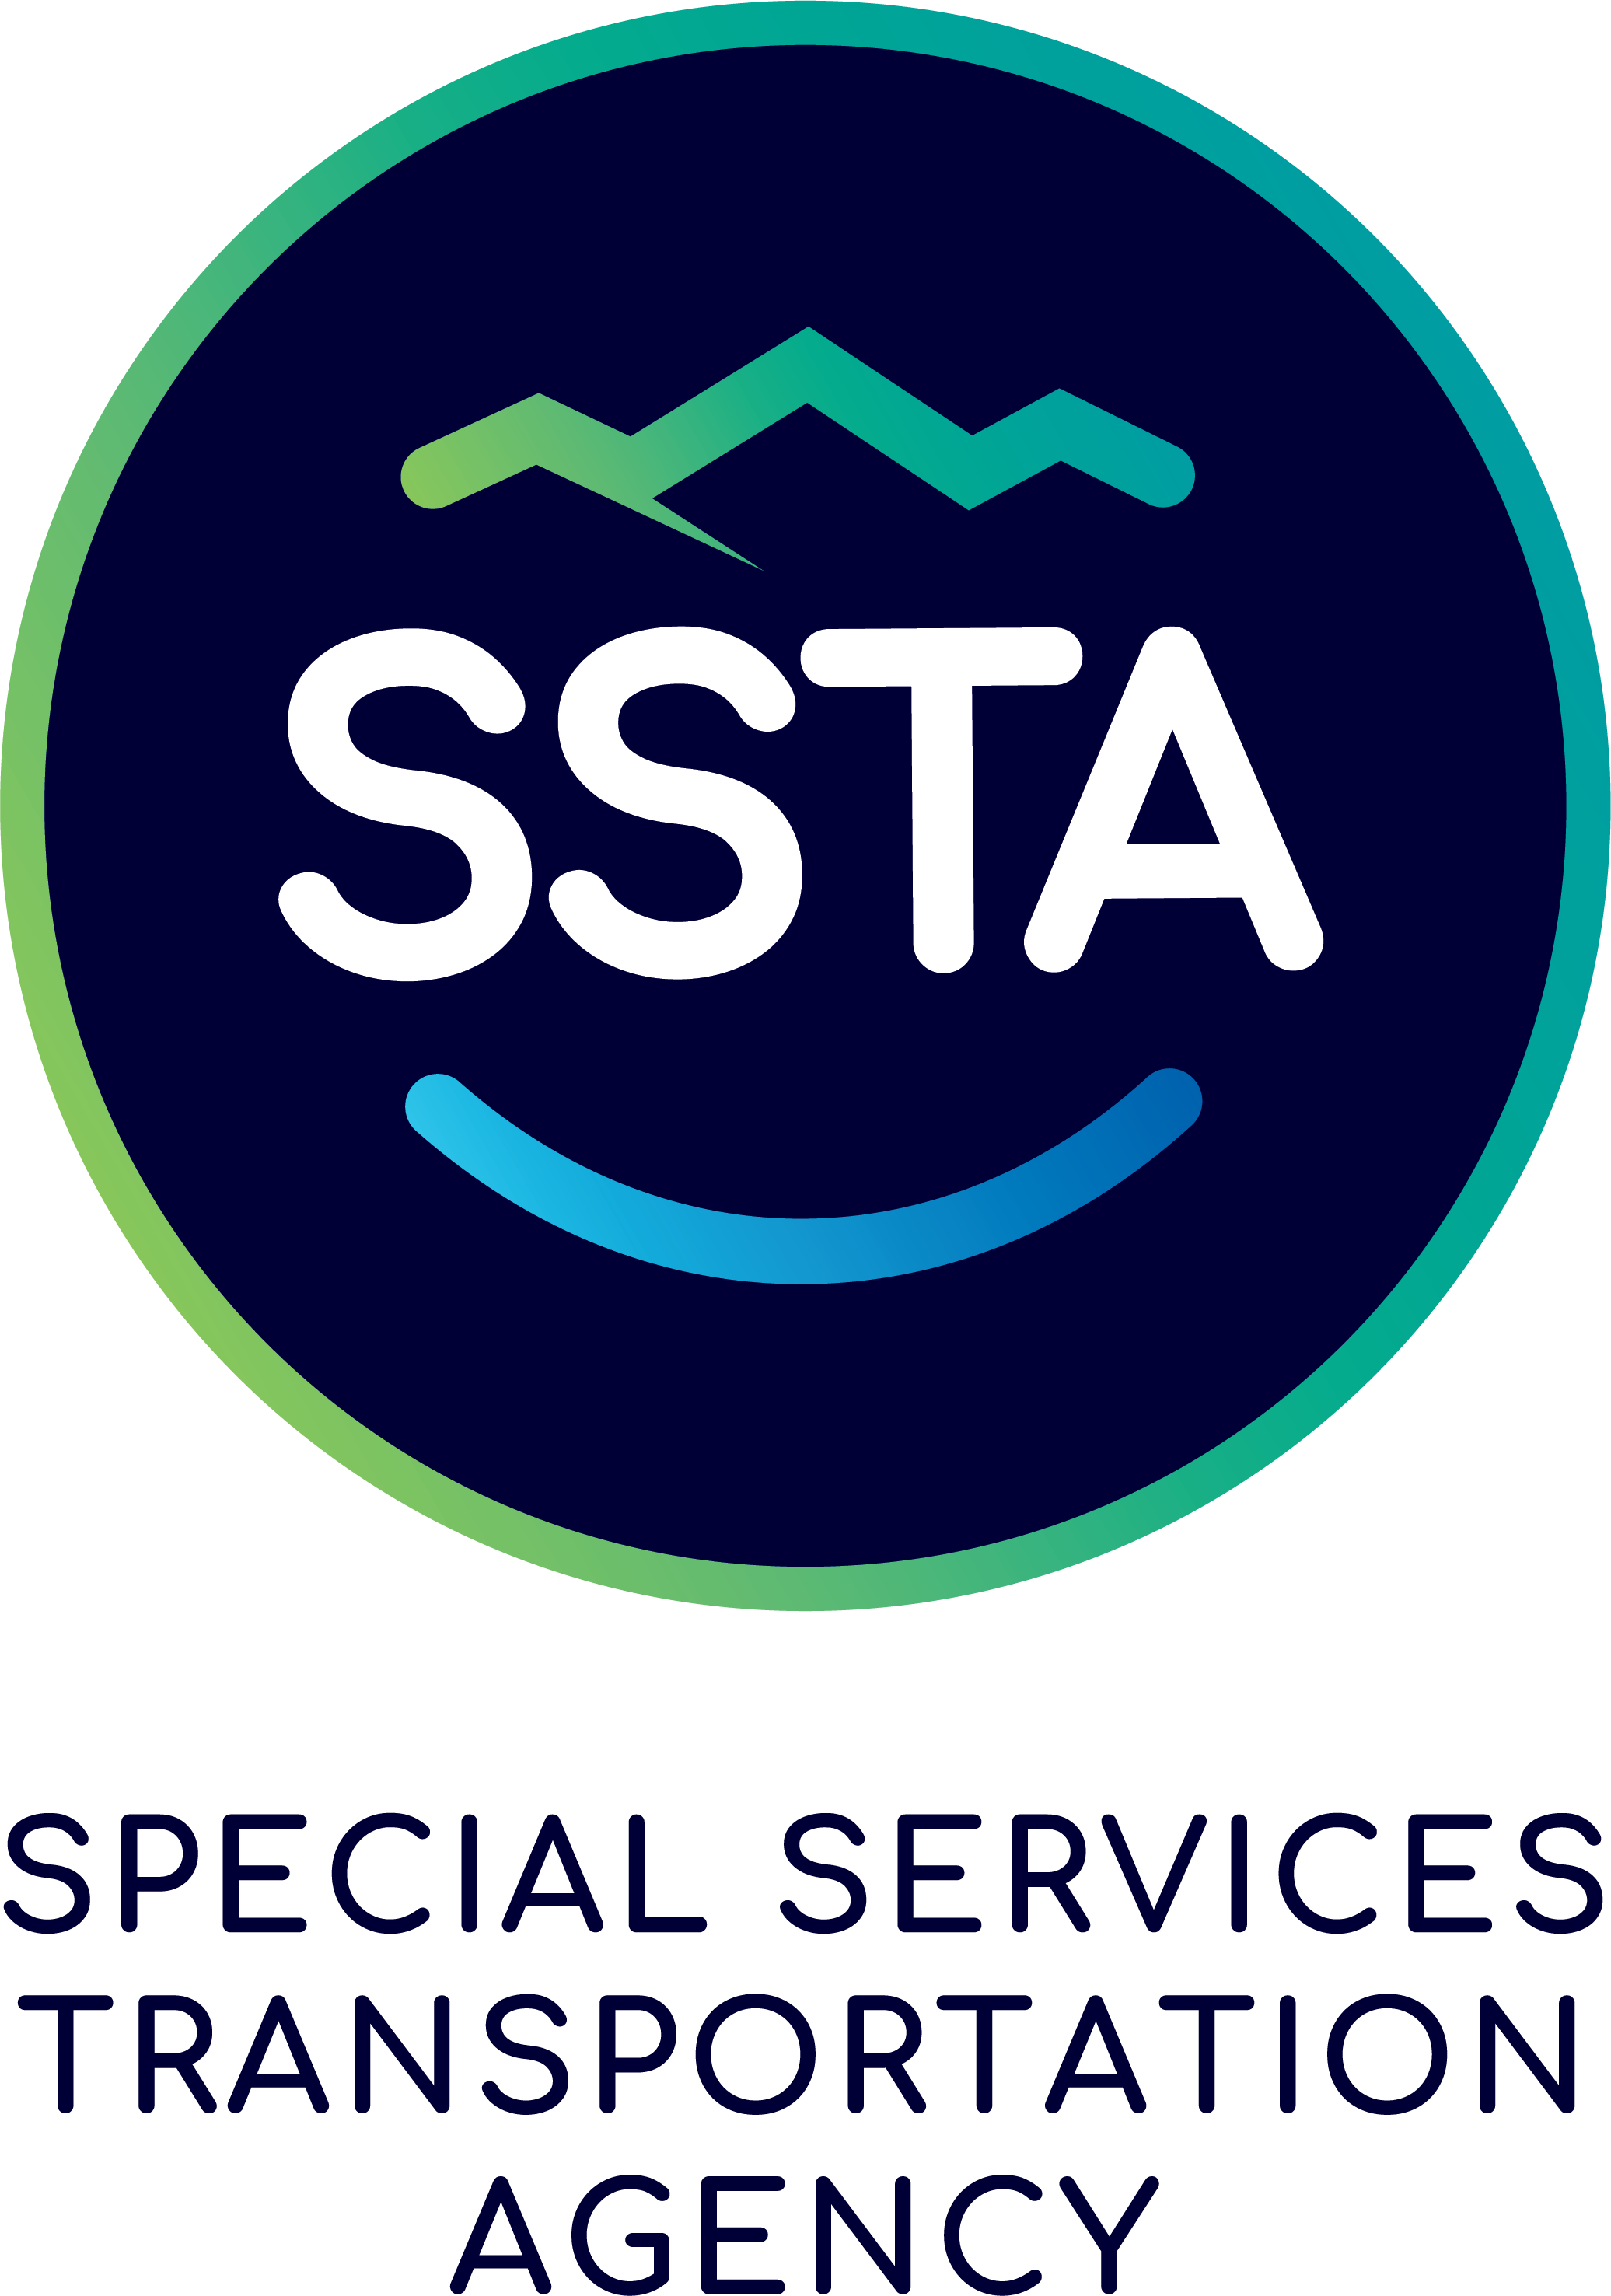 SSTA Special Services Transportation Agency